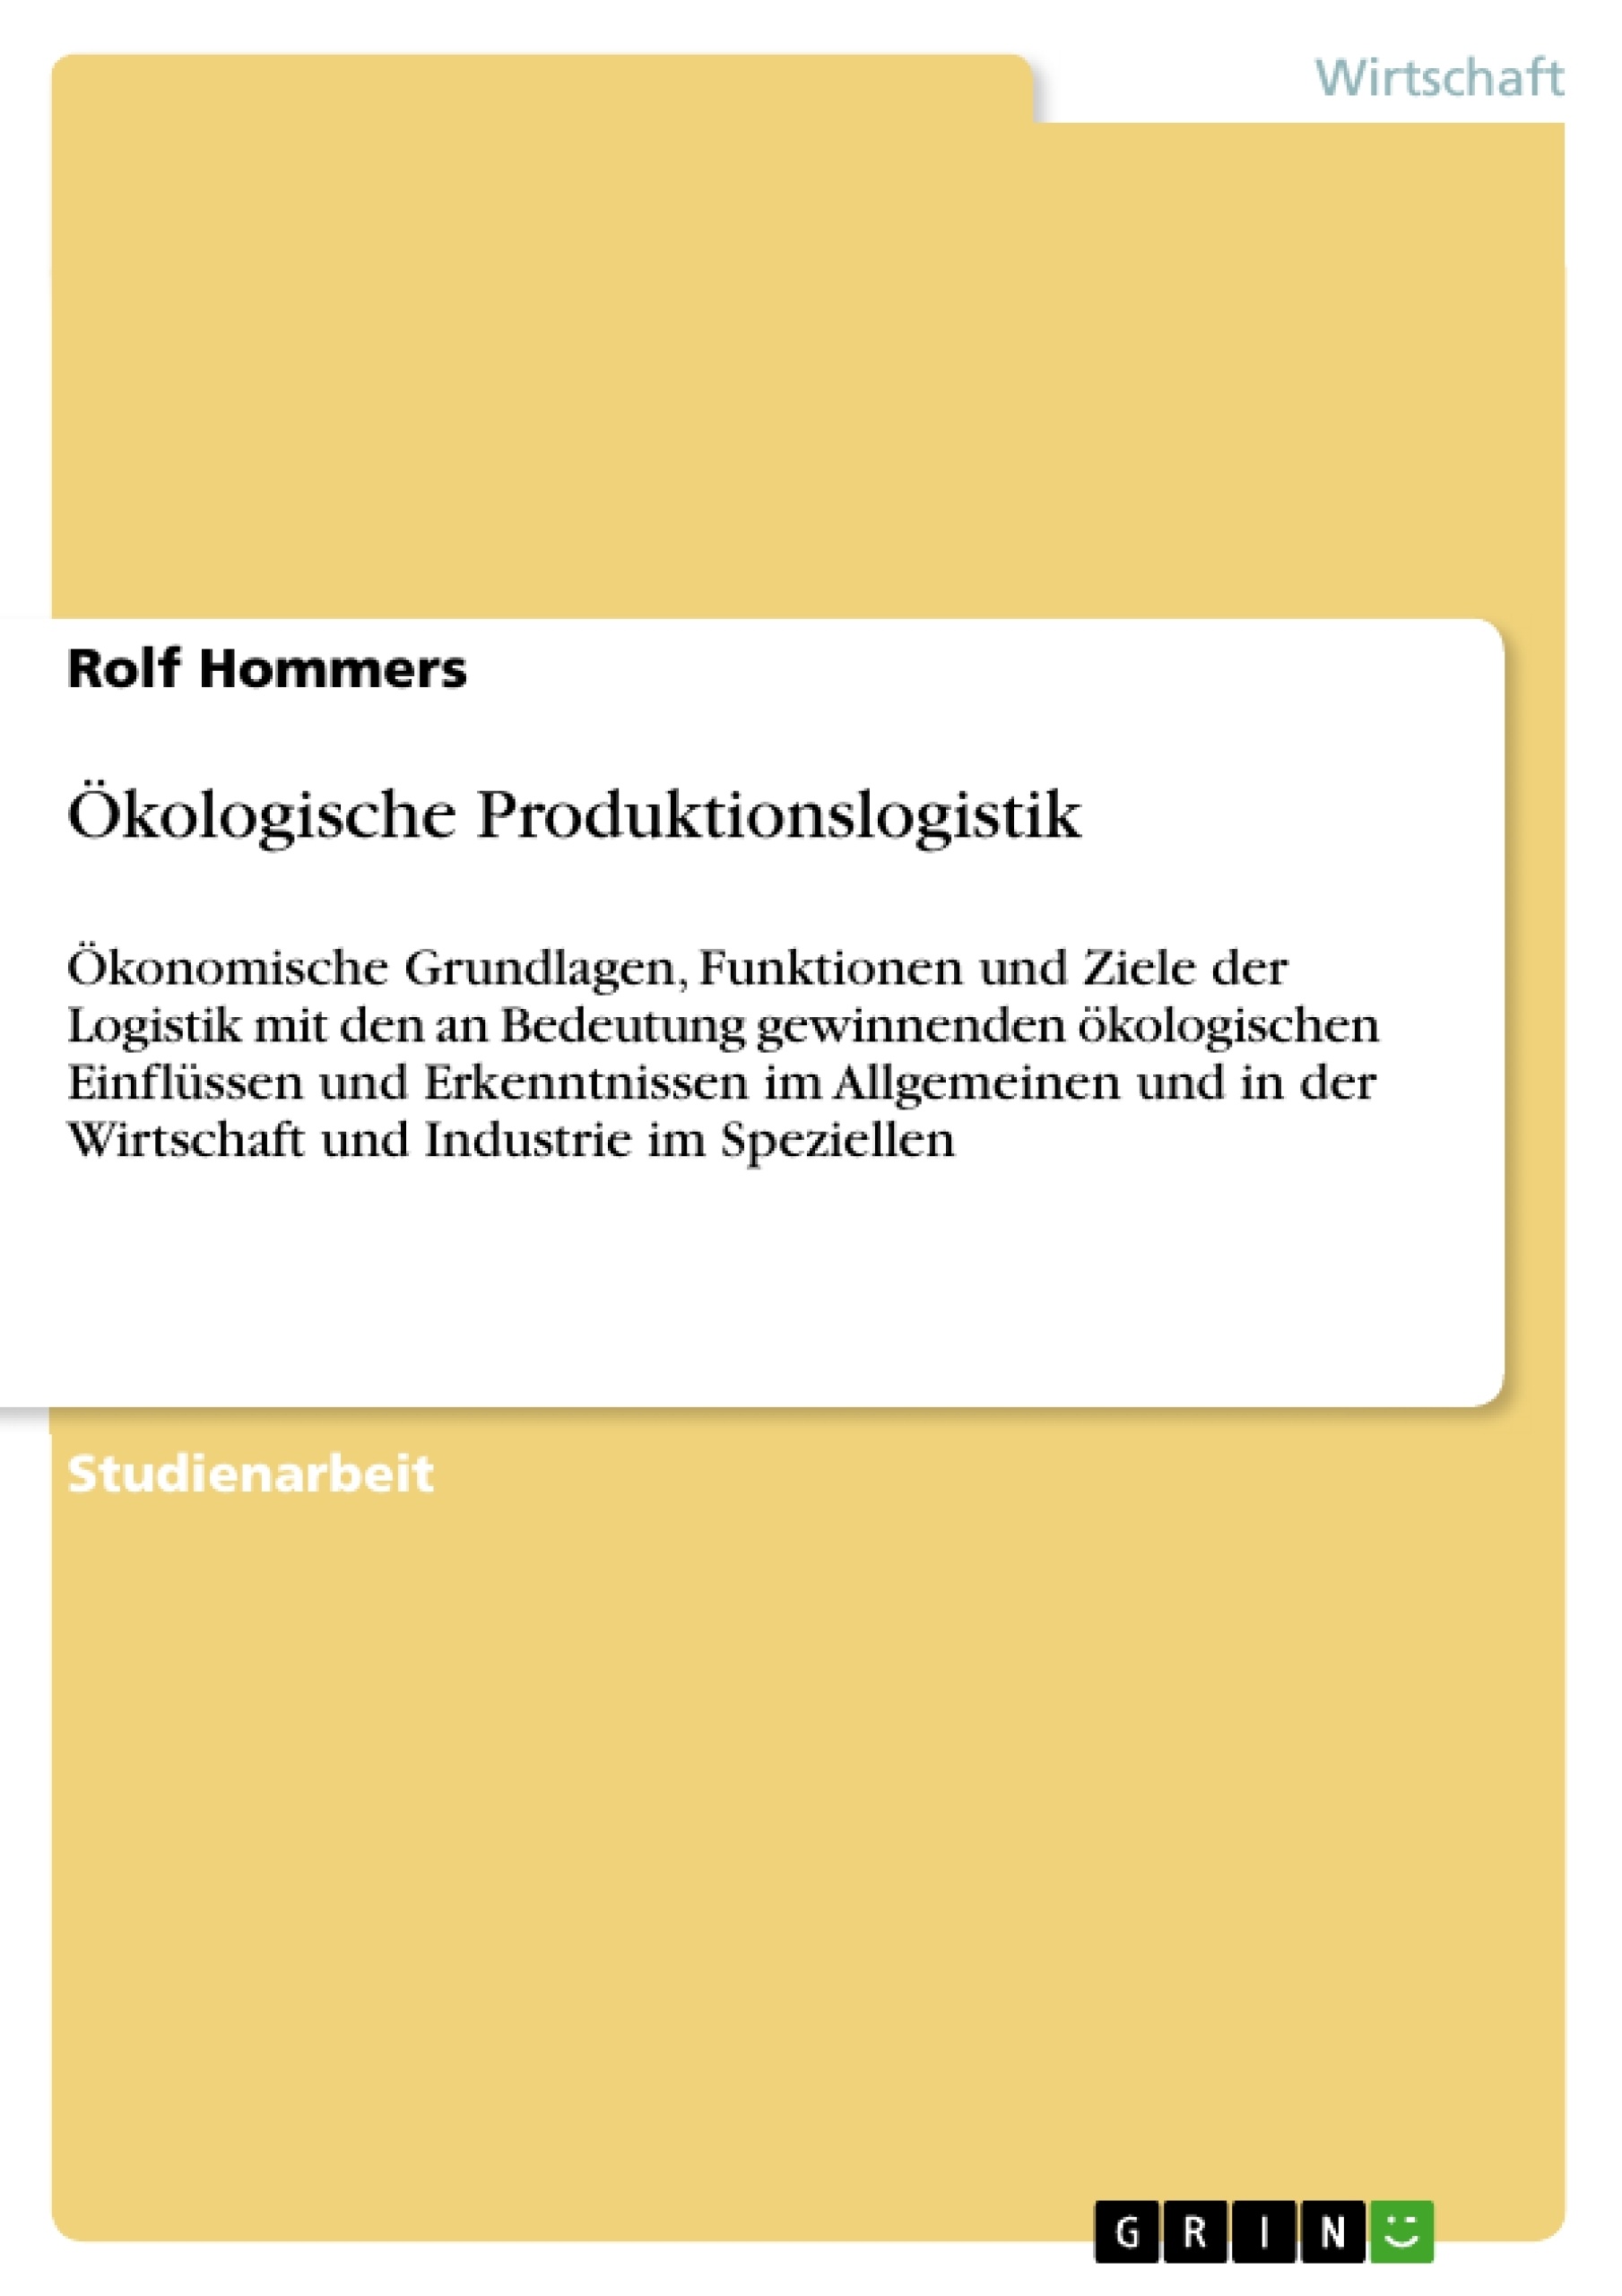 Título: Ökologische Produktionslogistik